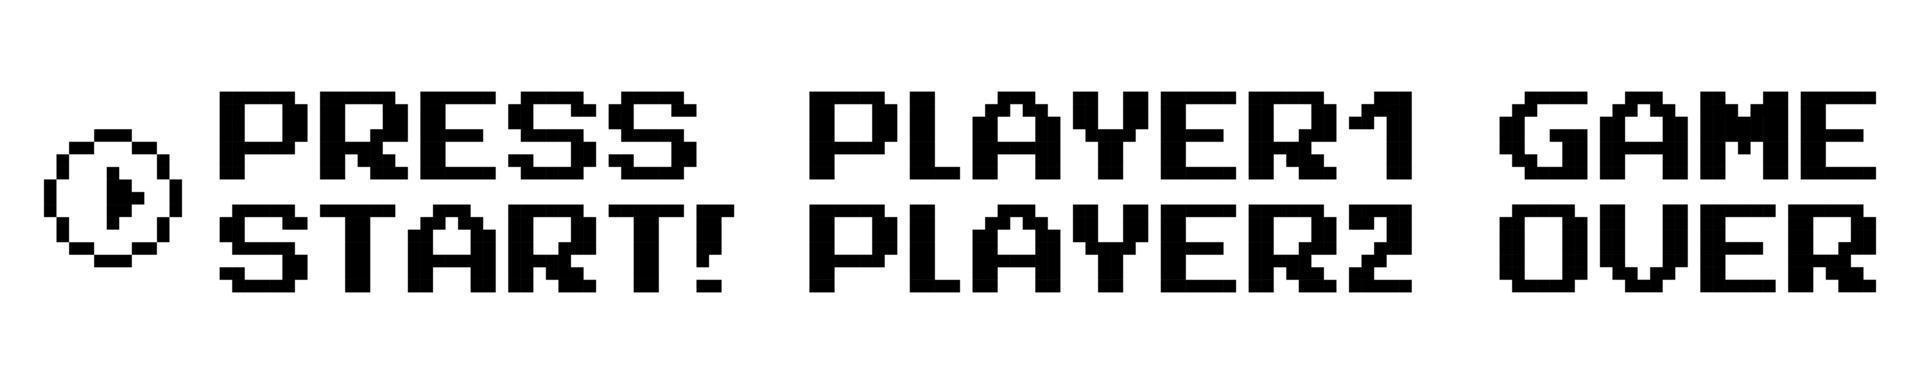 texte de jeux vidéo design plat défini dans la conception de pixels vecteur